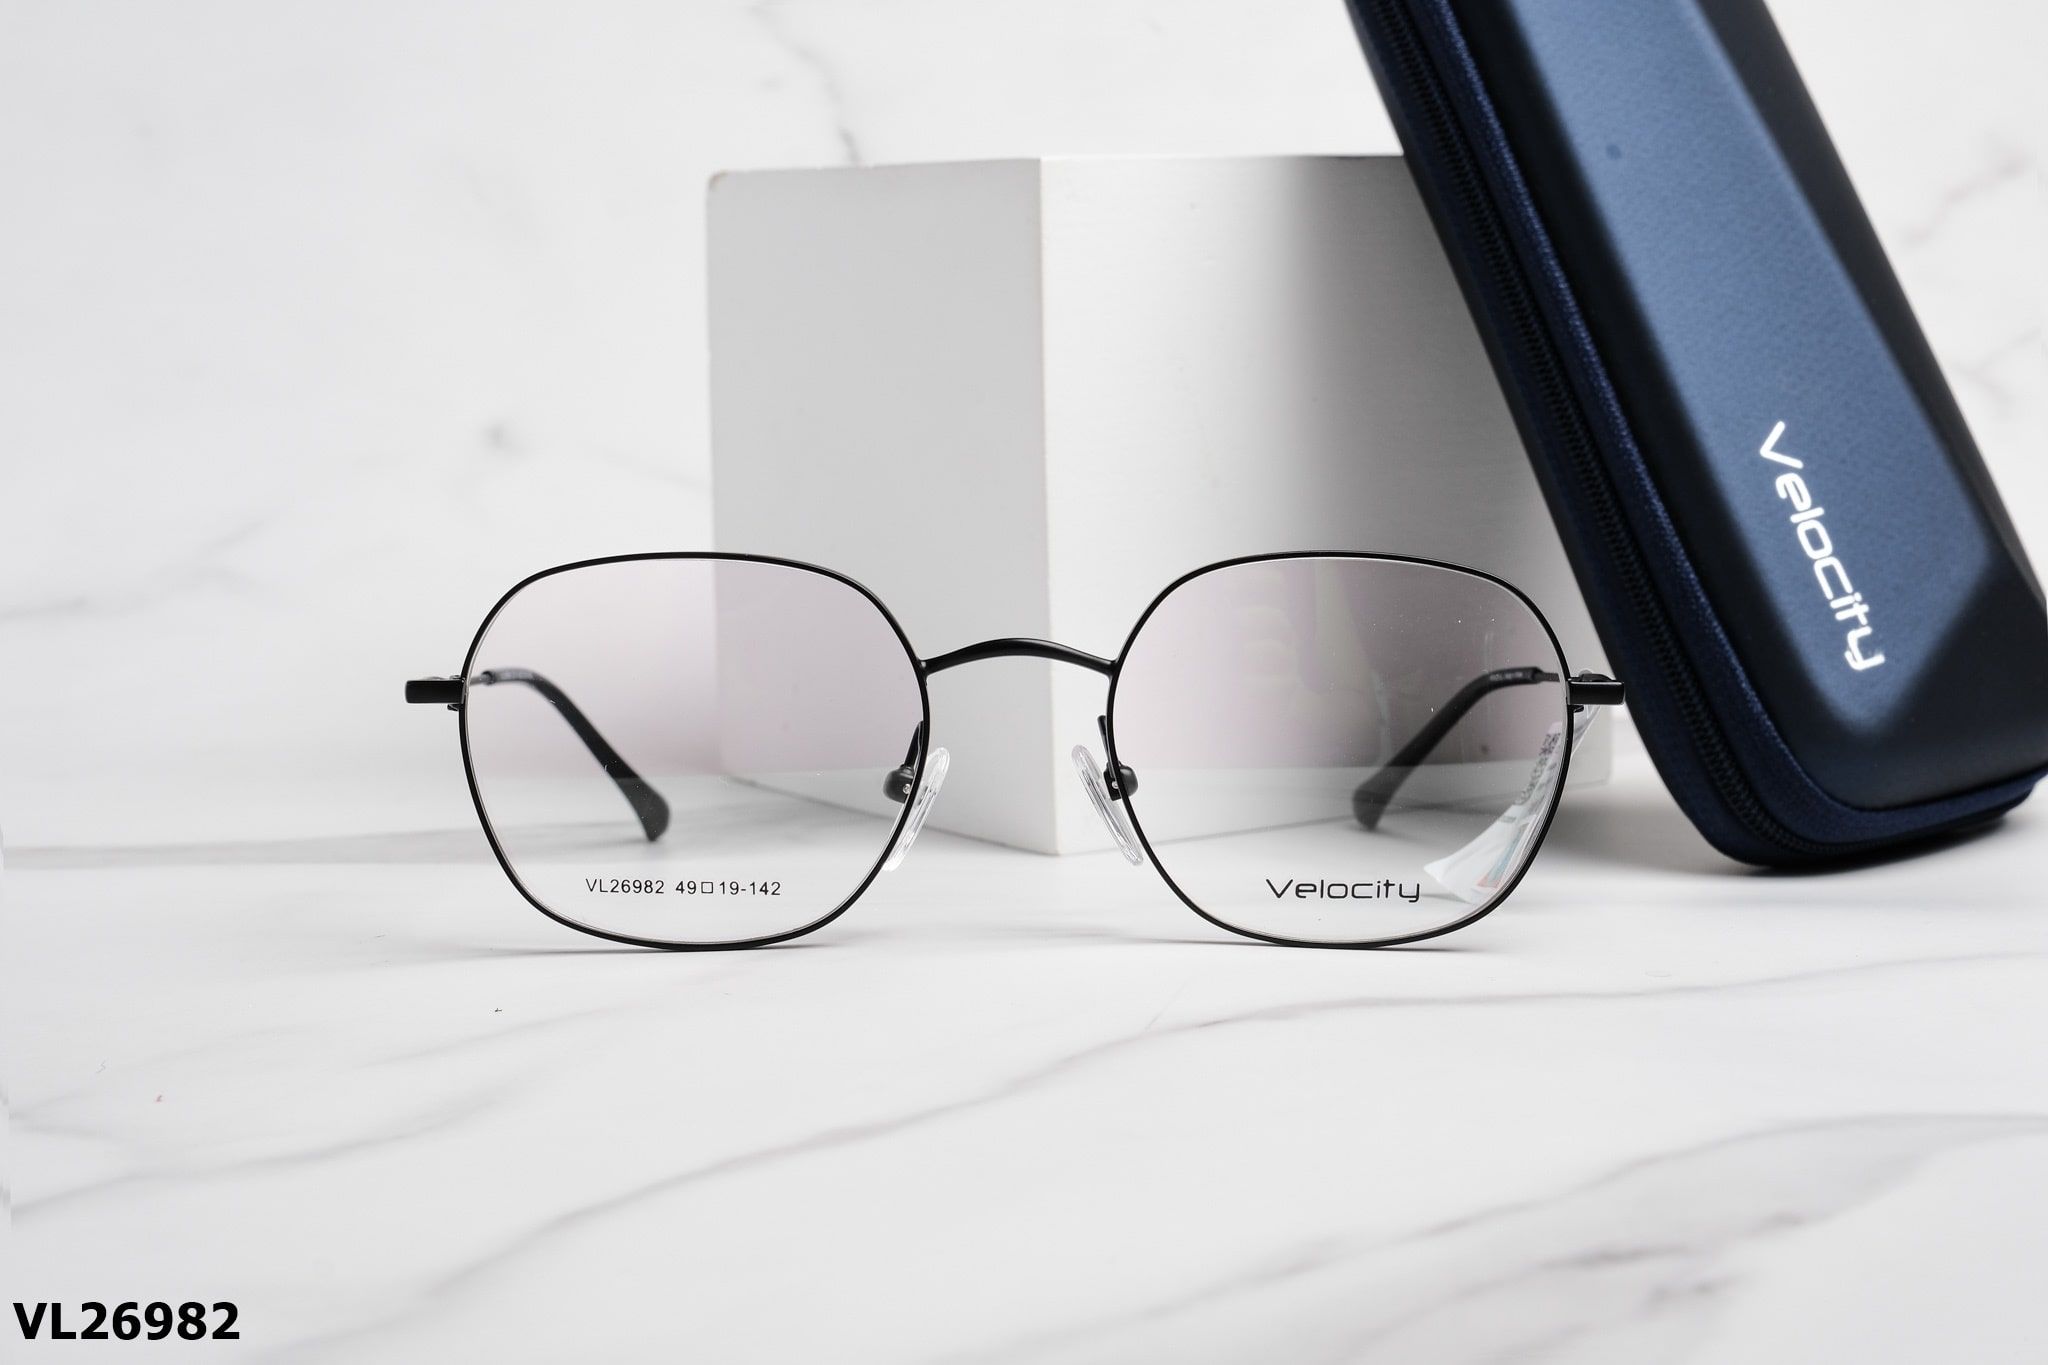  Velocity Eyewear - Glasses - VL26982 